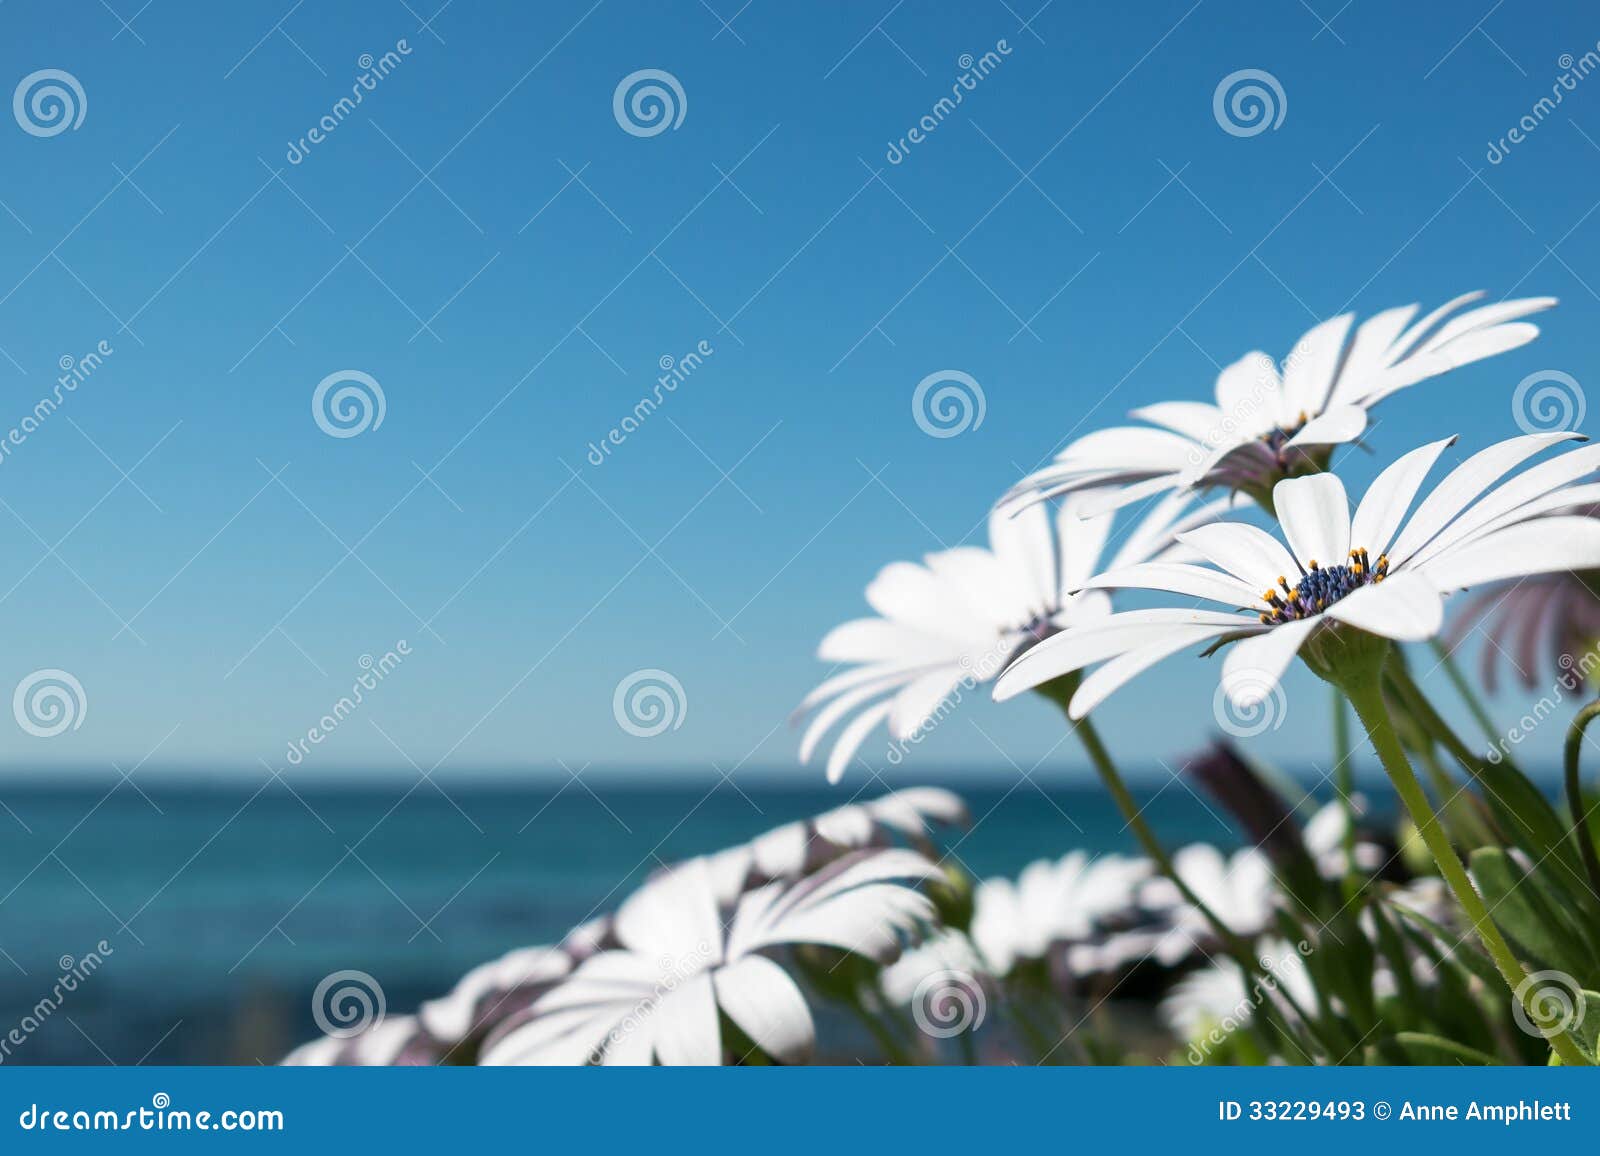 daisies by the beach